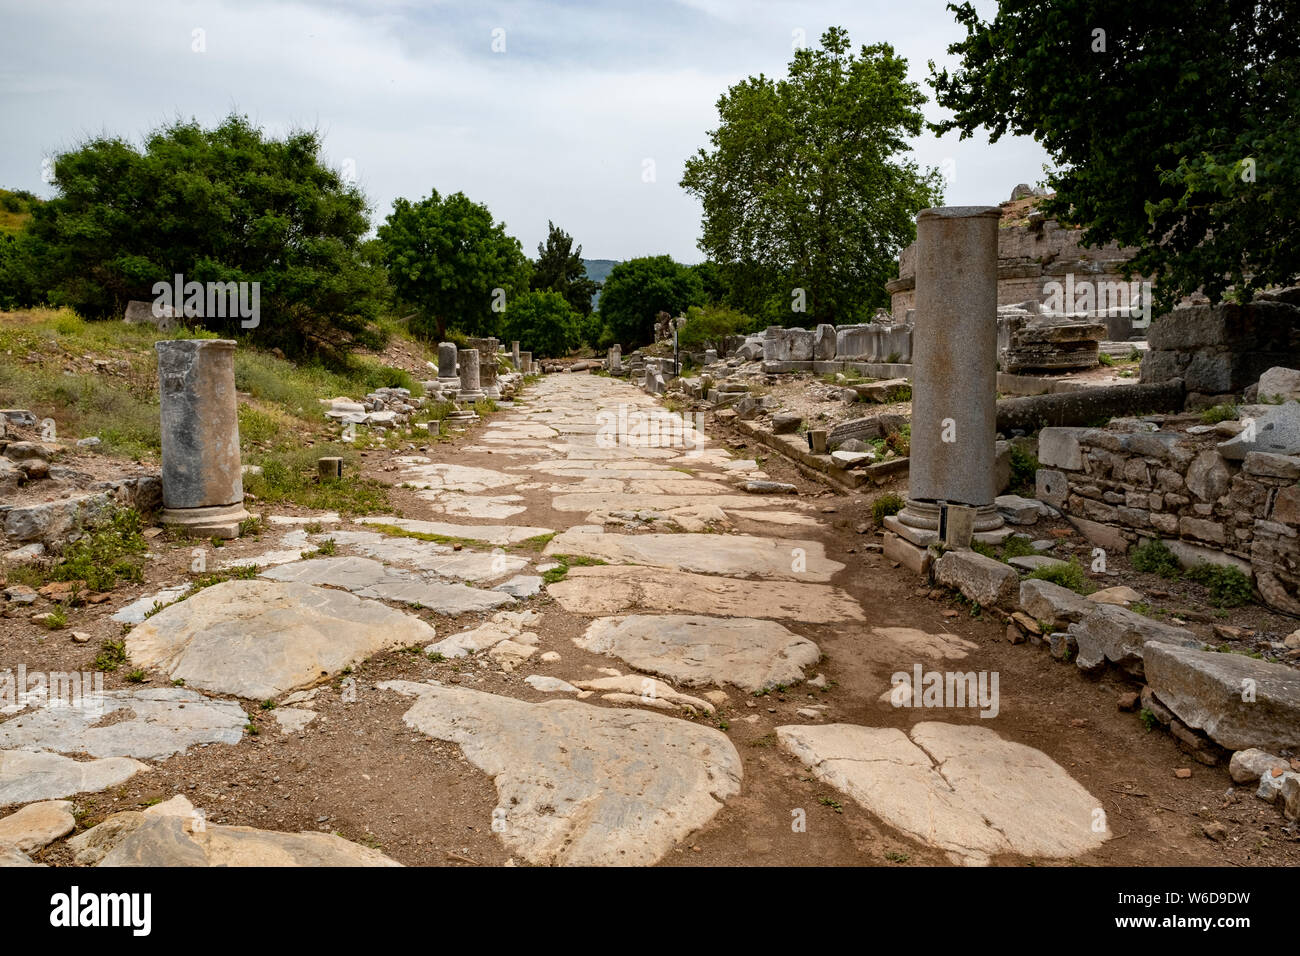 Las ruinas de la antigua ciudad griega y romana de Éfeso, una vez que un importante puerto del imperio romano, ubicado en la provincia de Izmir de Turquía Foto de stock